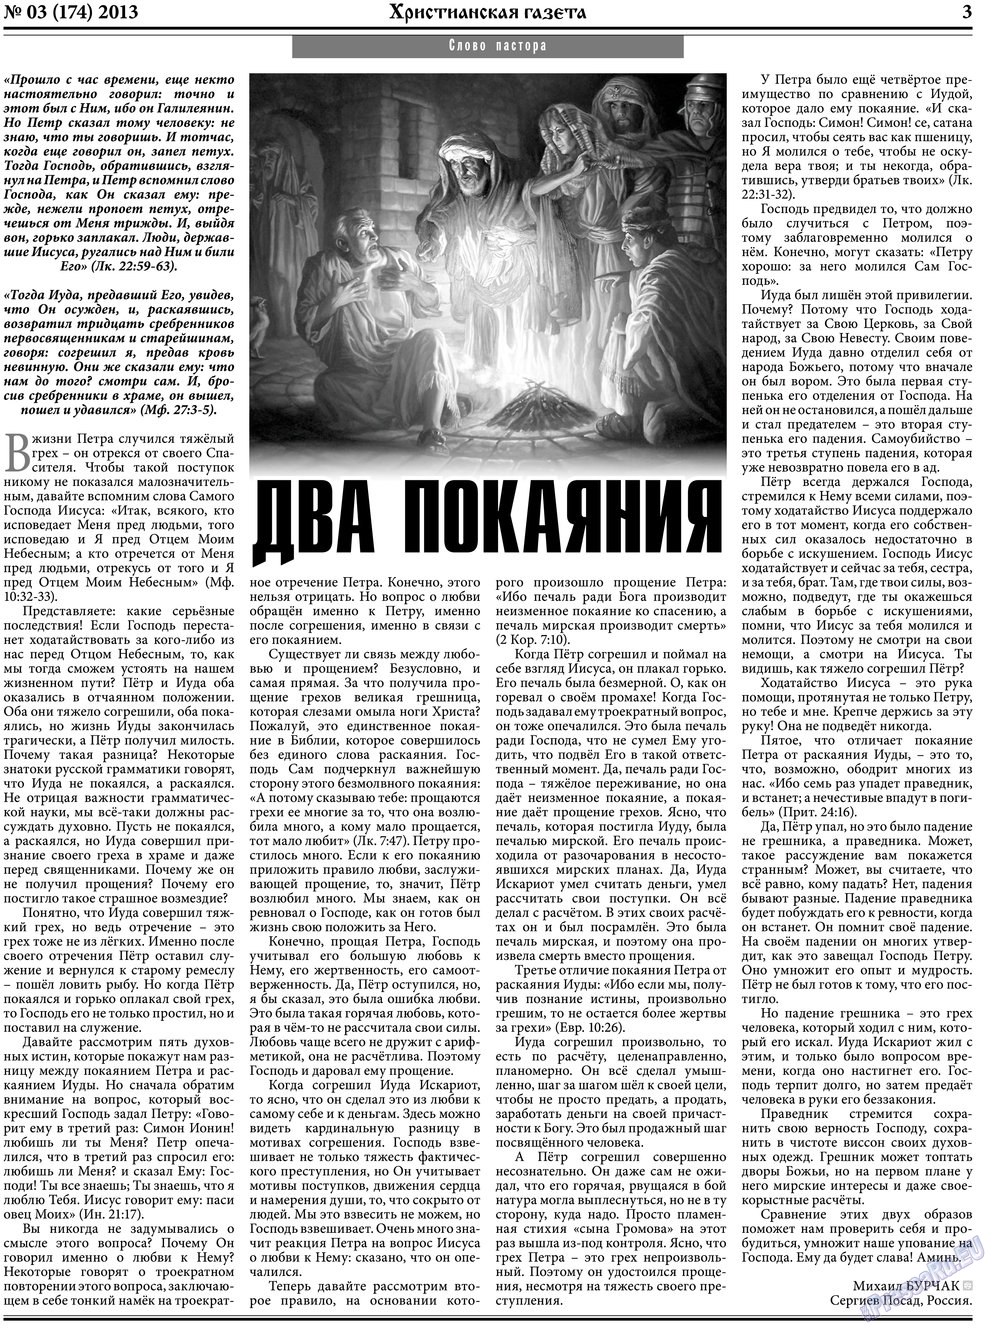 Христианская газета (газета). 2013 год, номер 3, стр. 3